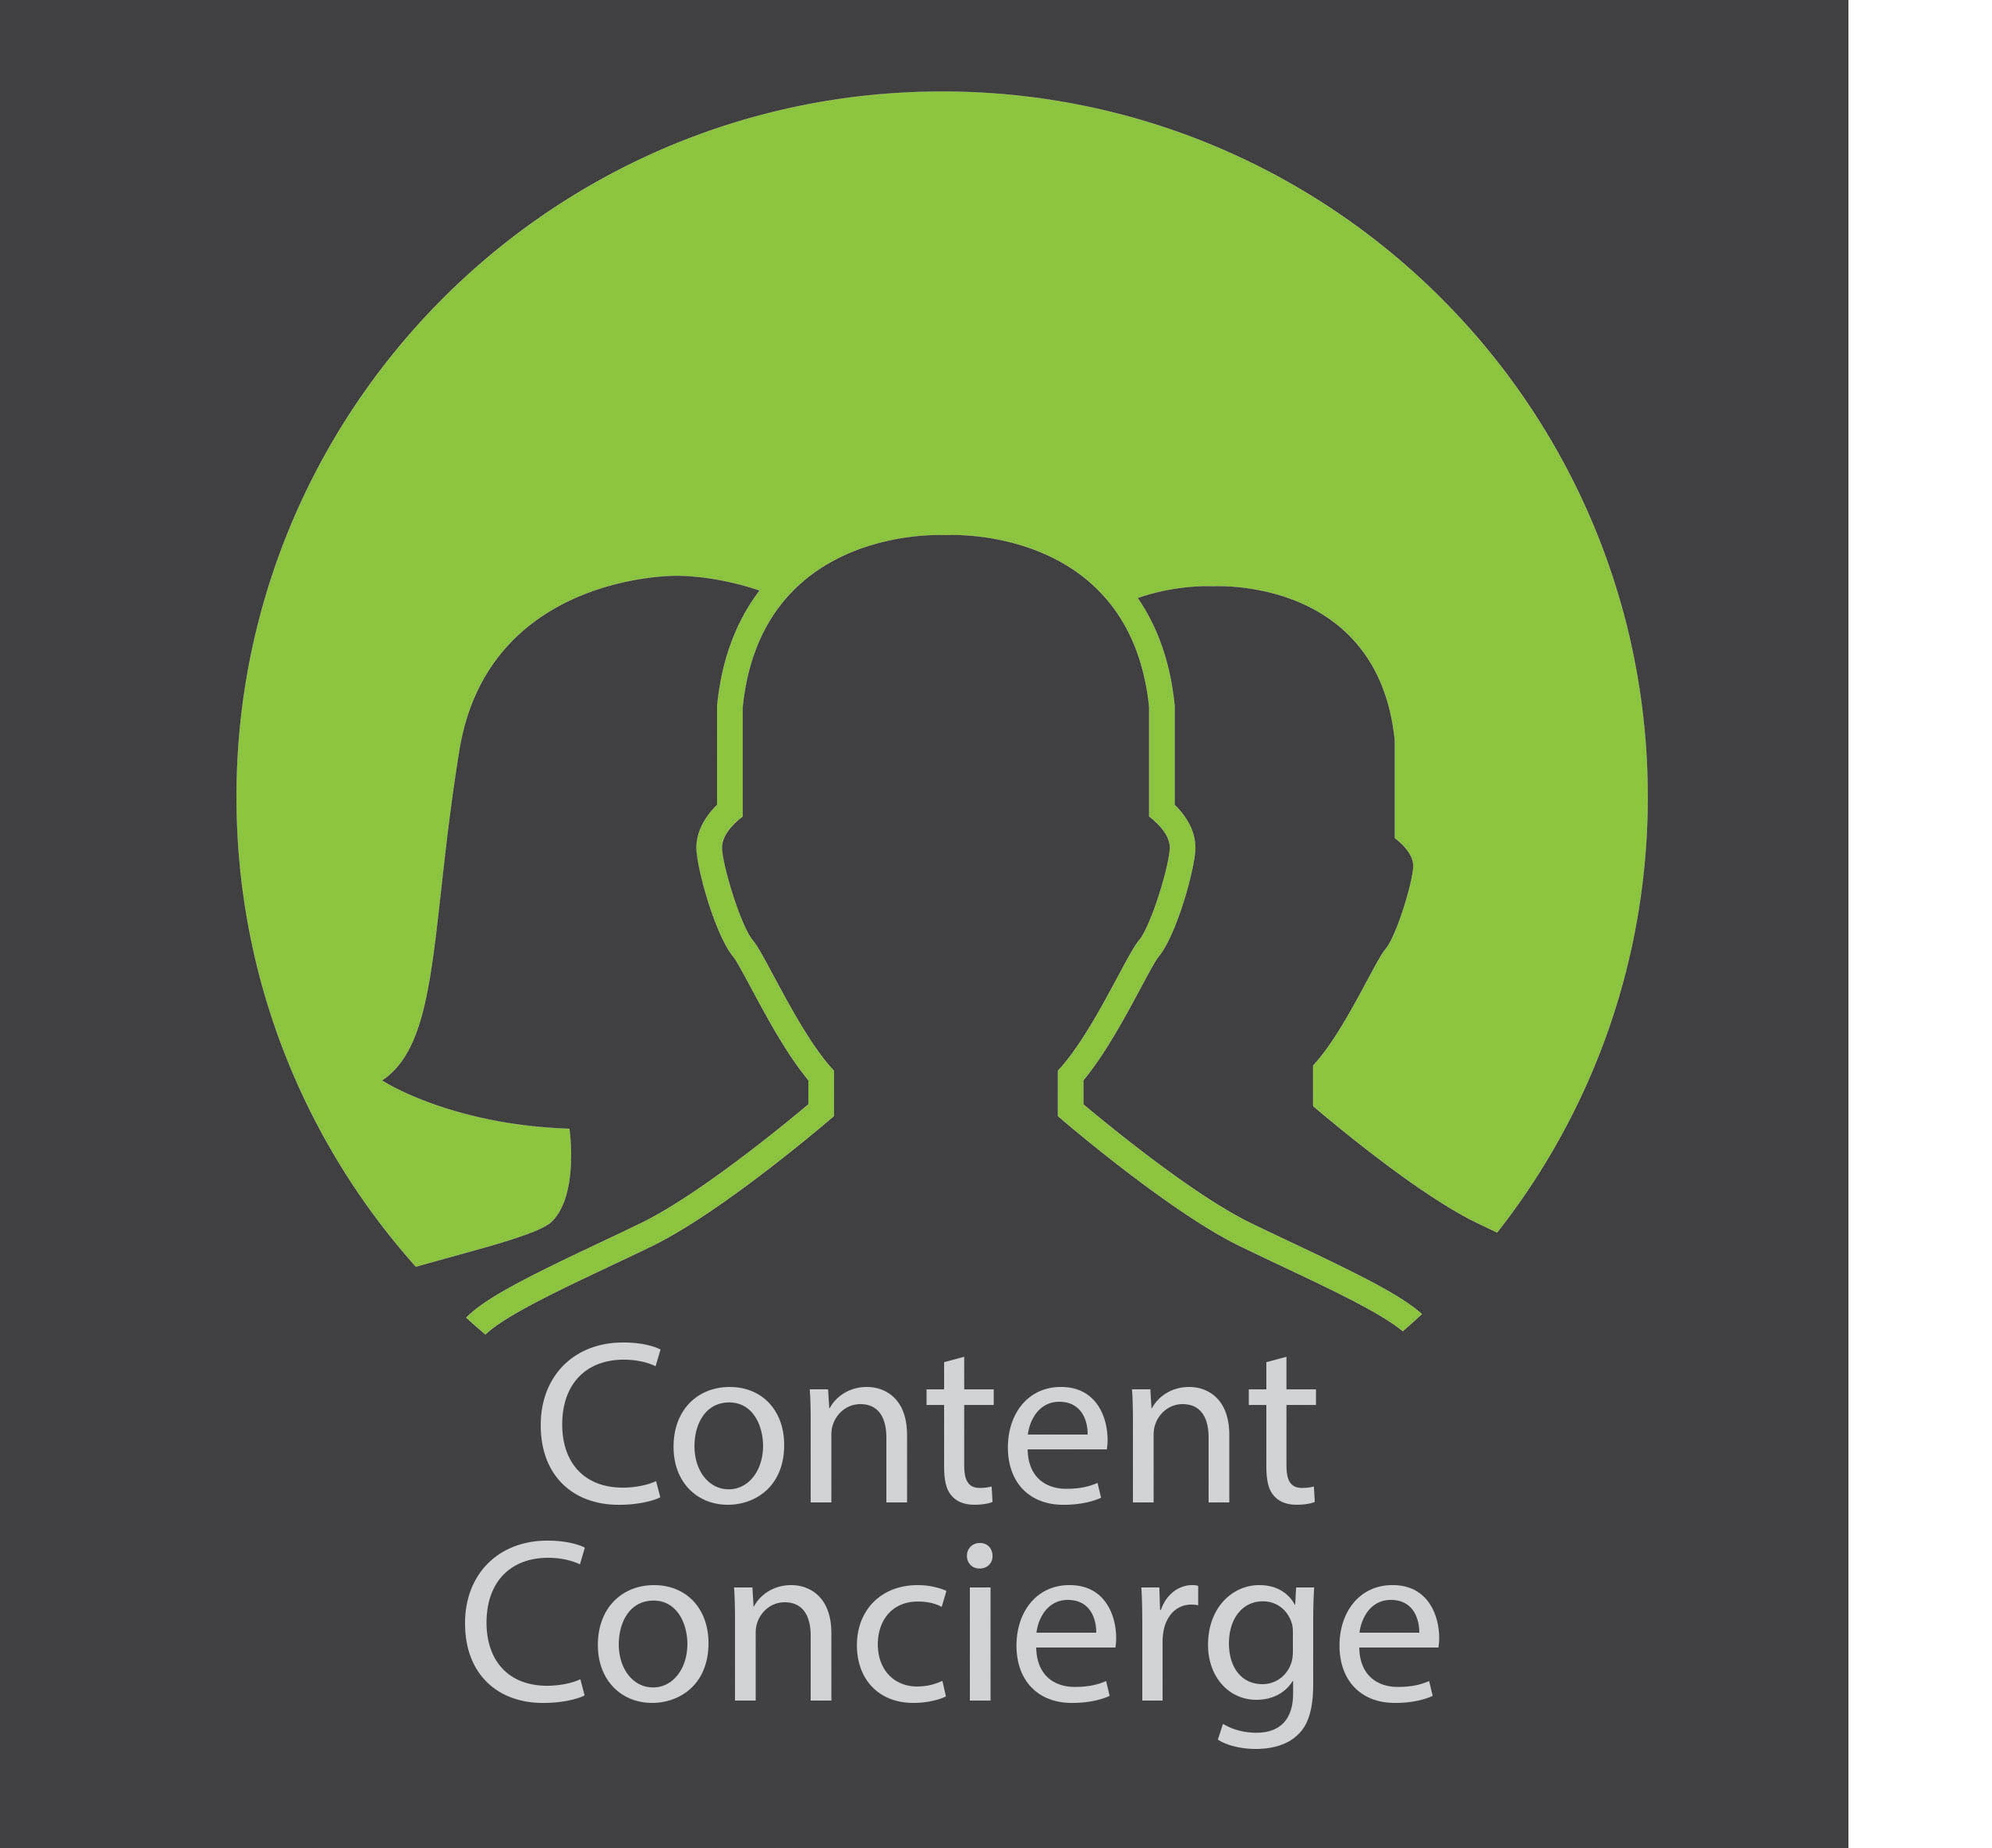 Content Concierge